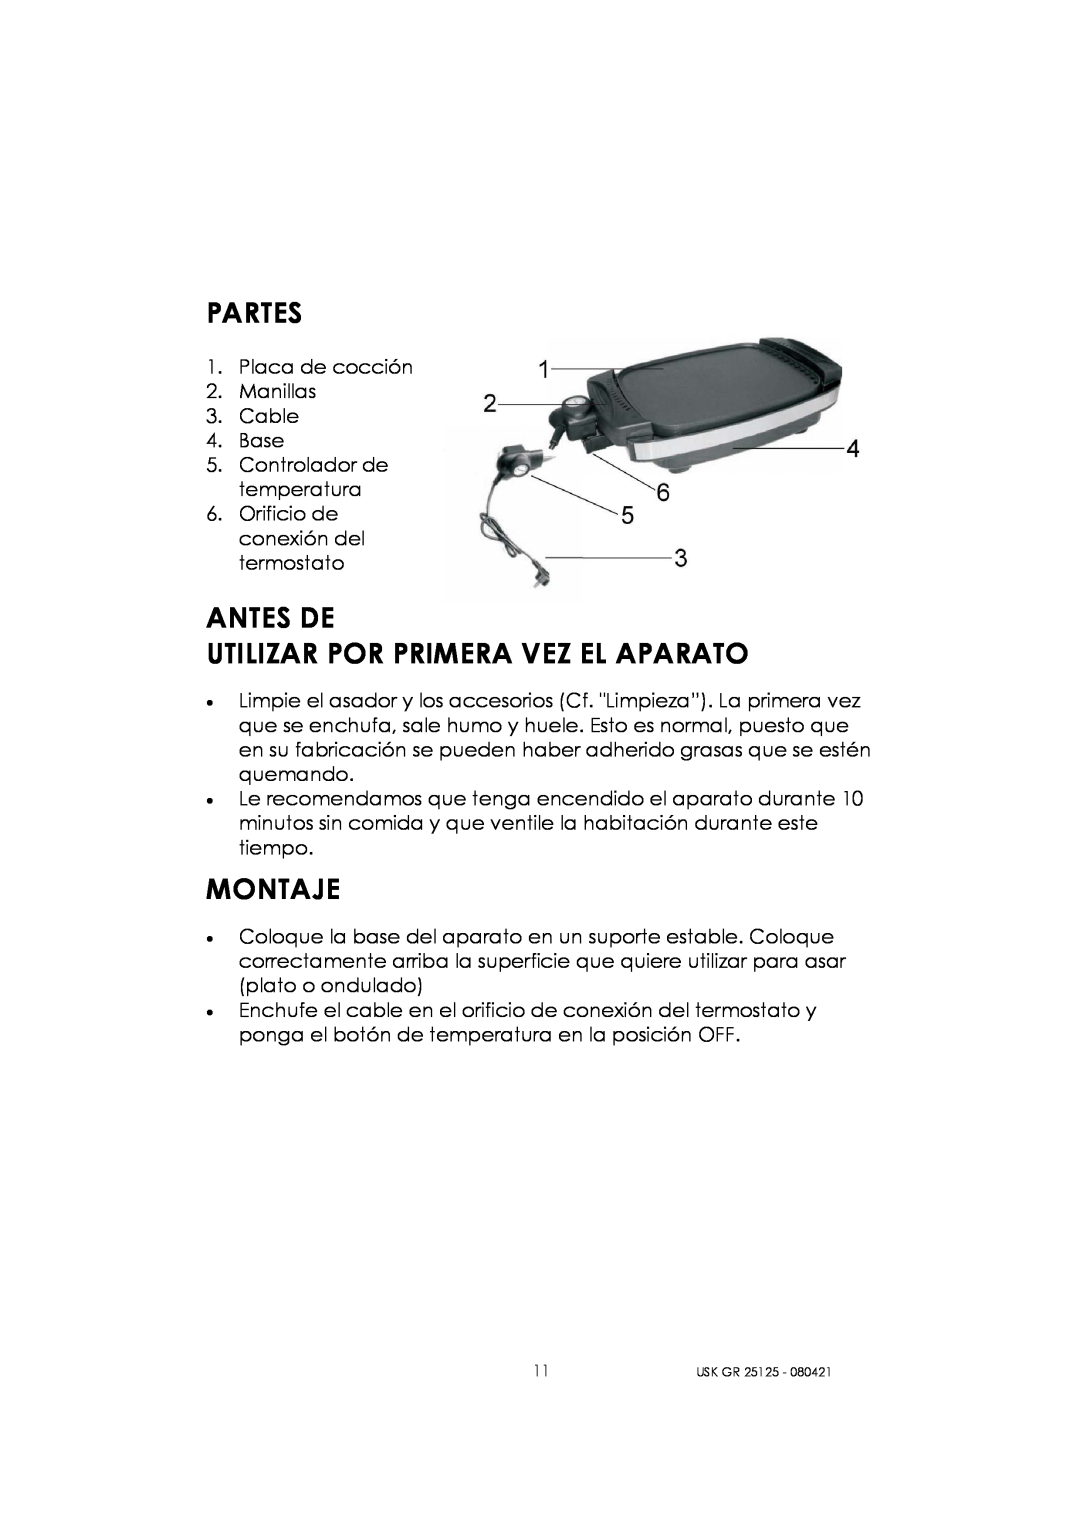 Kalorik USK GR 25125 manual Partes, Antes De Utilizar Por Primera Vez El Aparato, Montaje 